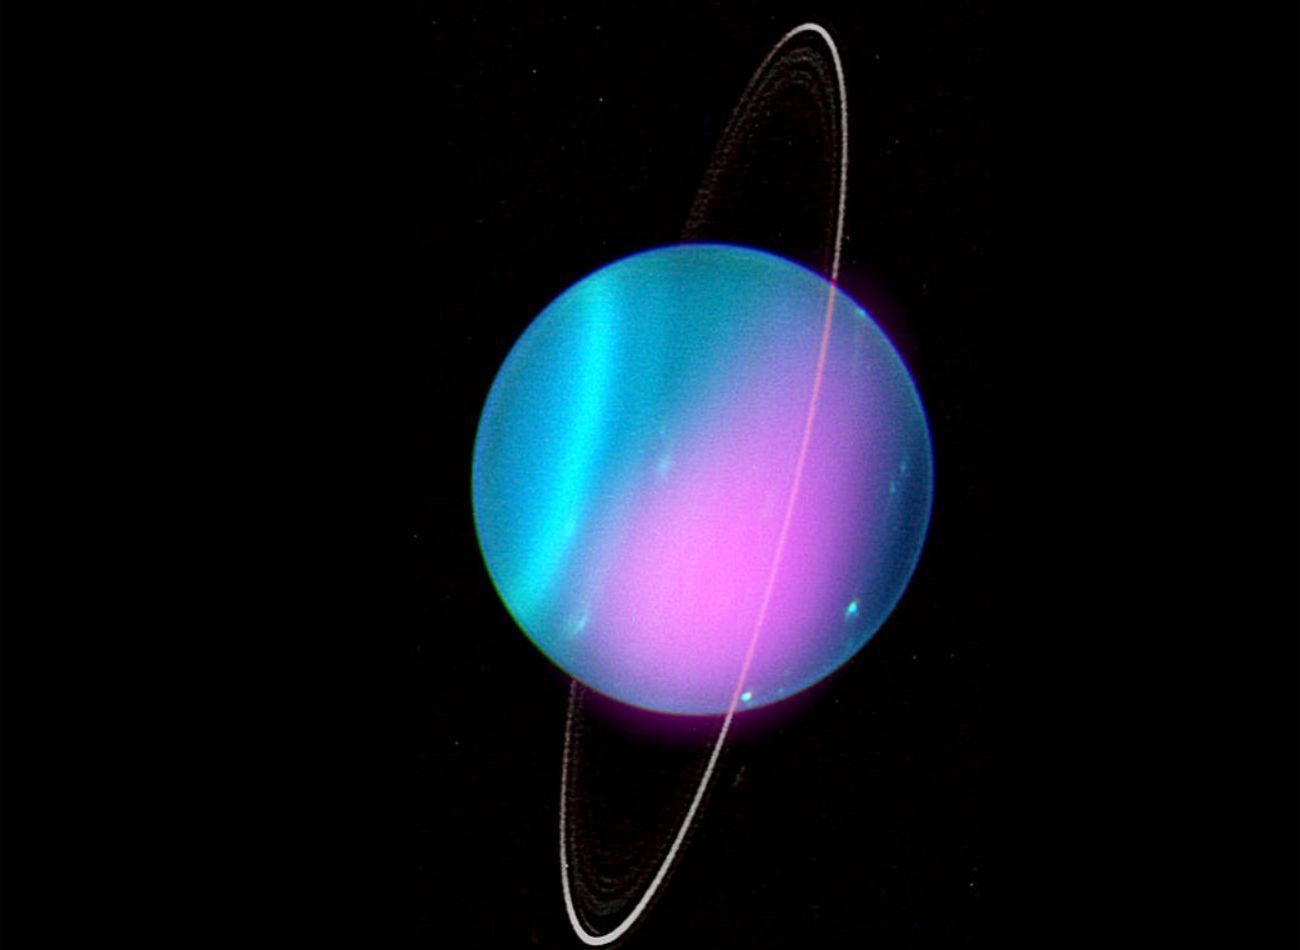 A Chandra űrtávcső altal az Uránuszról a röntgensugarak tartományában készített kép rá van vetítve a bolygó optikai képére. Látszanak a bolygó gyűrűi, és jól kivehető a hatalmas tengelyferdeség is. FORRÁS NASA/CXO/University College London/W. Dunn et al; az optikai képé: W.M. Keck Observatory